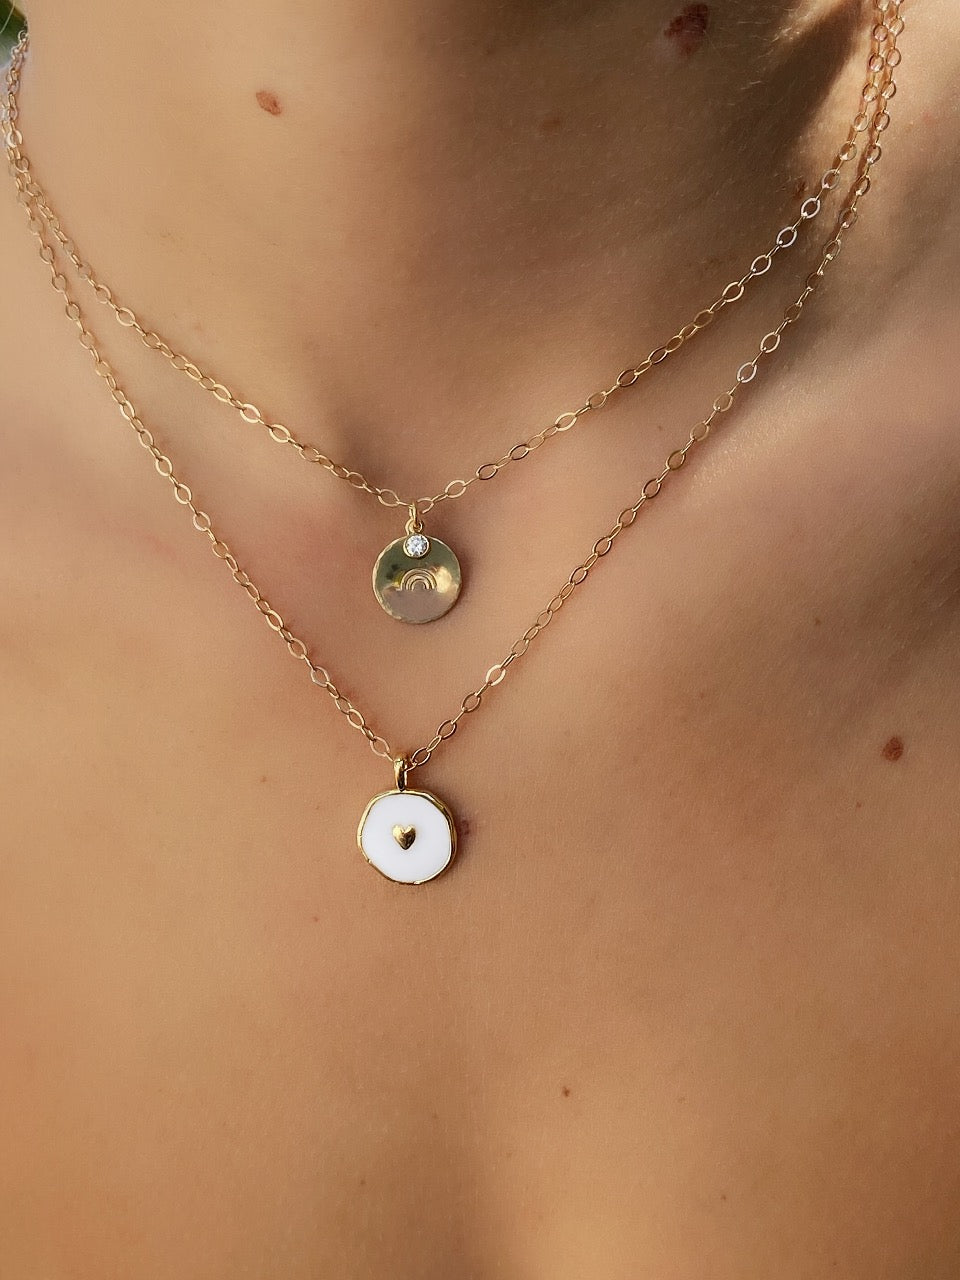 Enamel Charm Necklace + More Colors